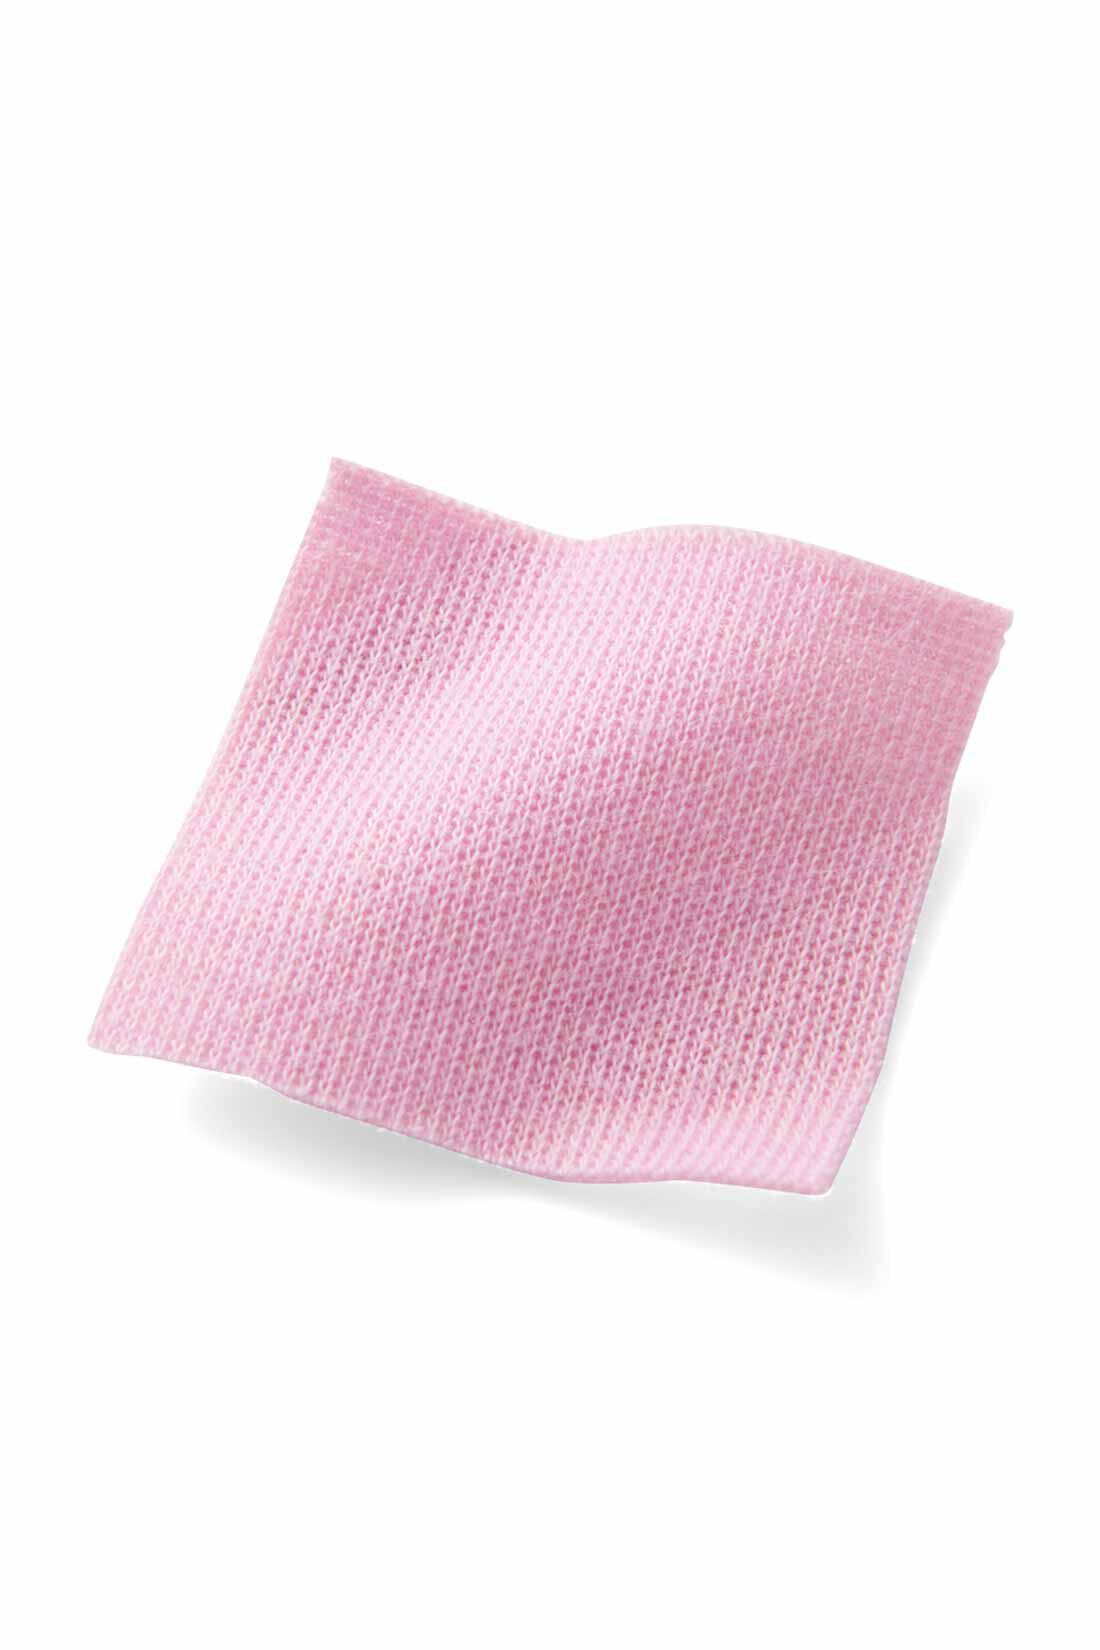 IEDIT|【イラストレーターきくちあつこさんコラボ】IEDIT[イディット]　フレアーマキシワンピース〈ピンク〉|通年着られる肉厚でやわらかなスムース素材。